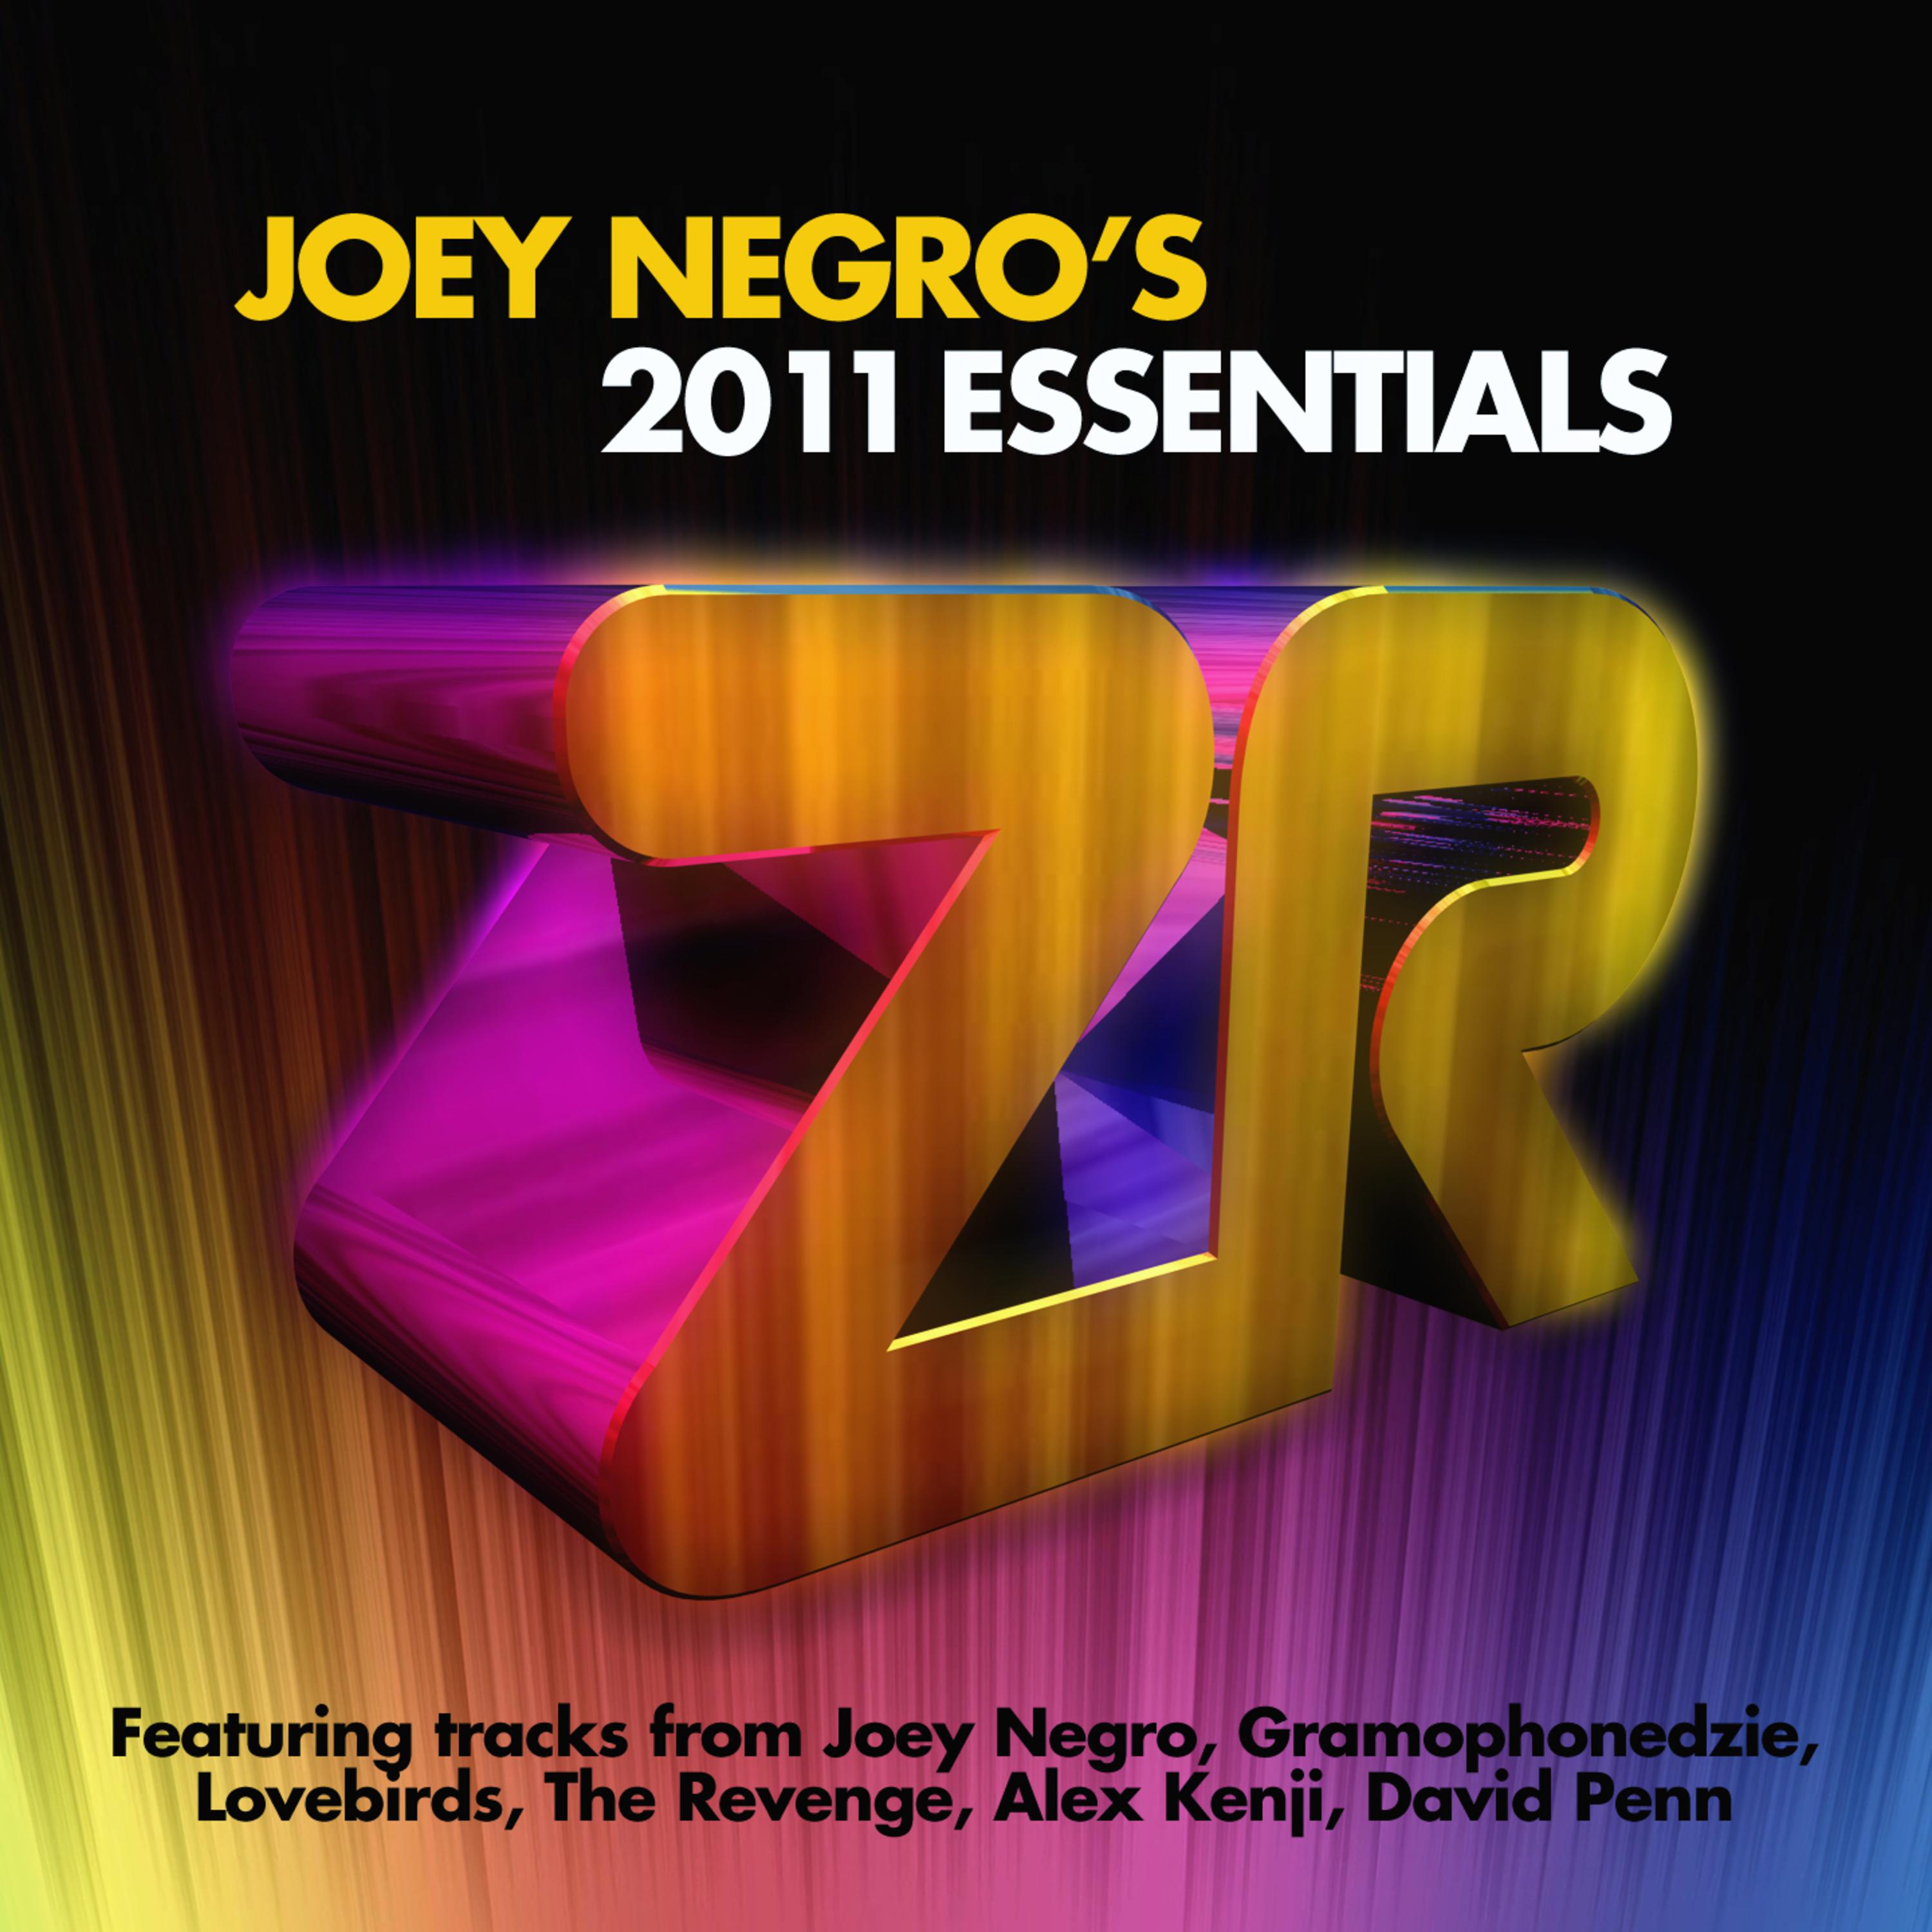 Joey Negro's 2011 Essentials